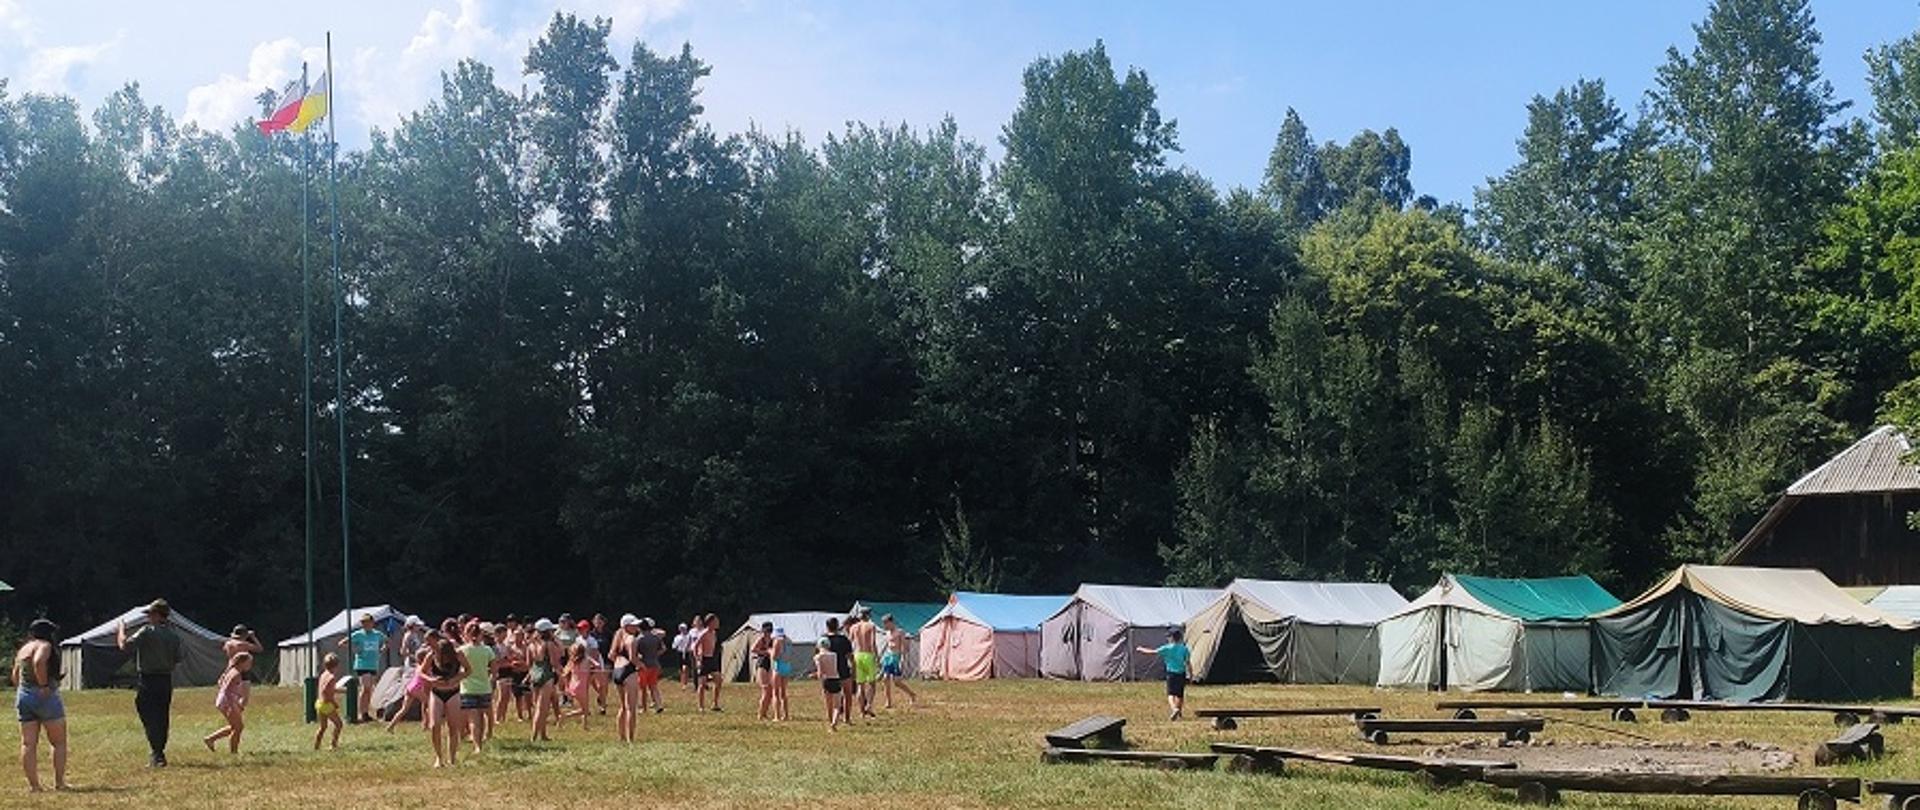 Obozowisko harcerskie. Z lewej maszty z flagami m. in. Polski a przy nich grupa dzieci. W tle namioty harcerskie.